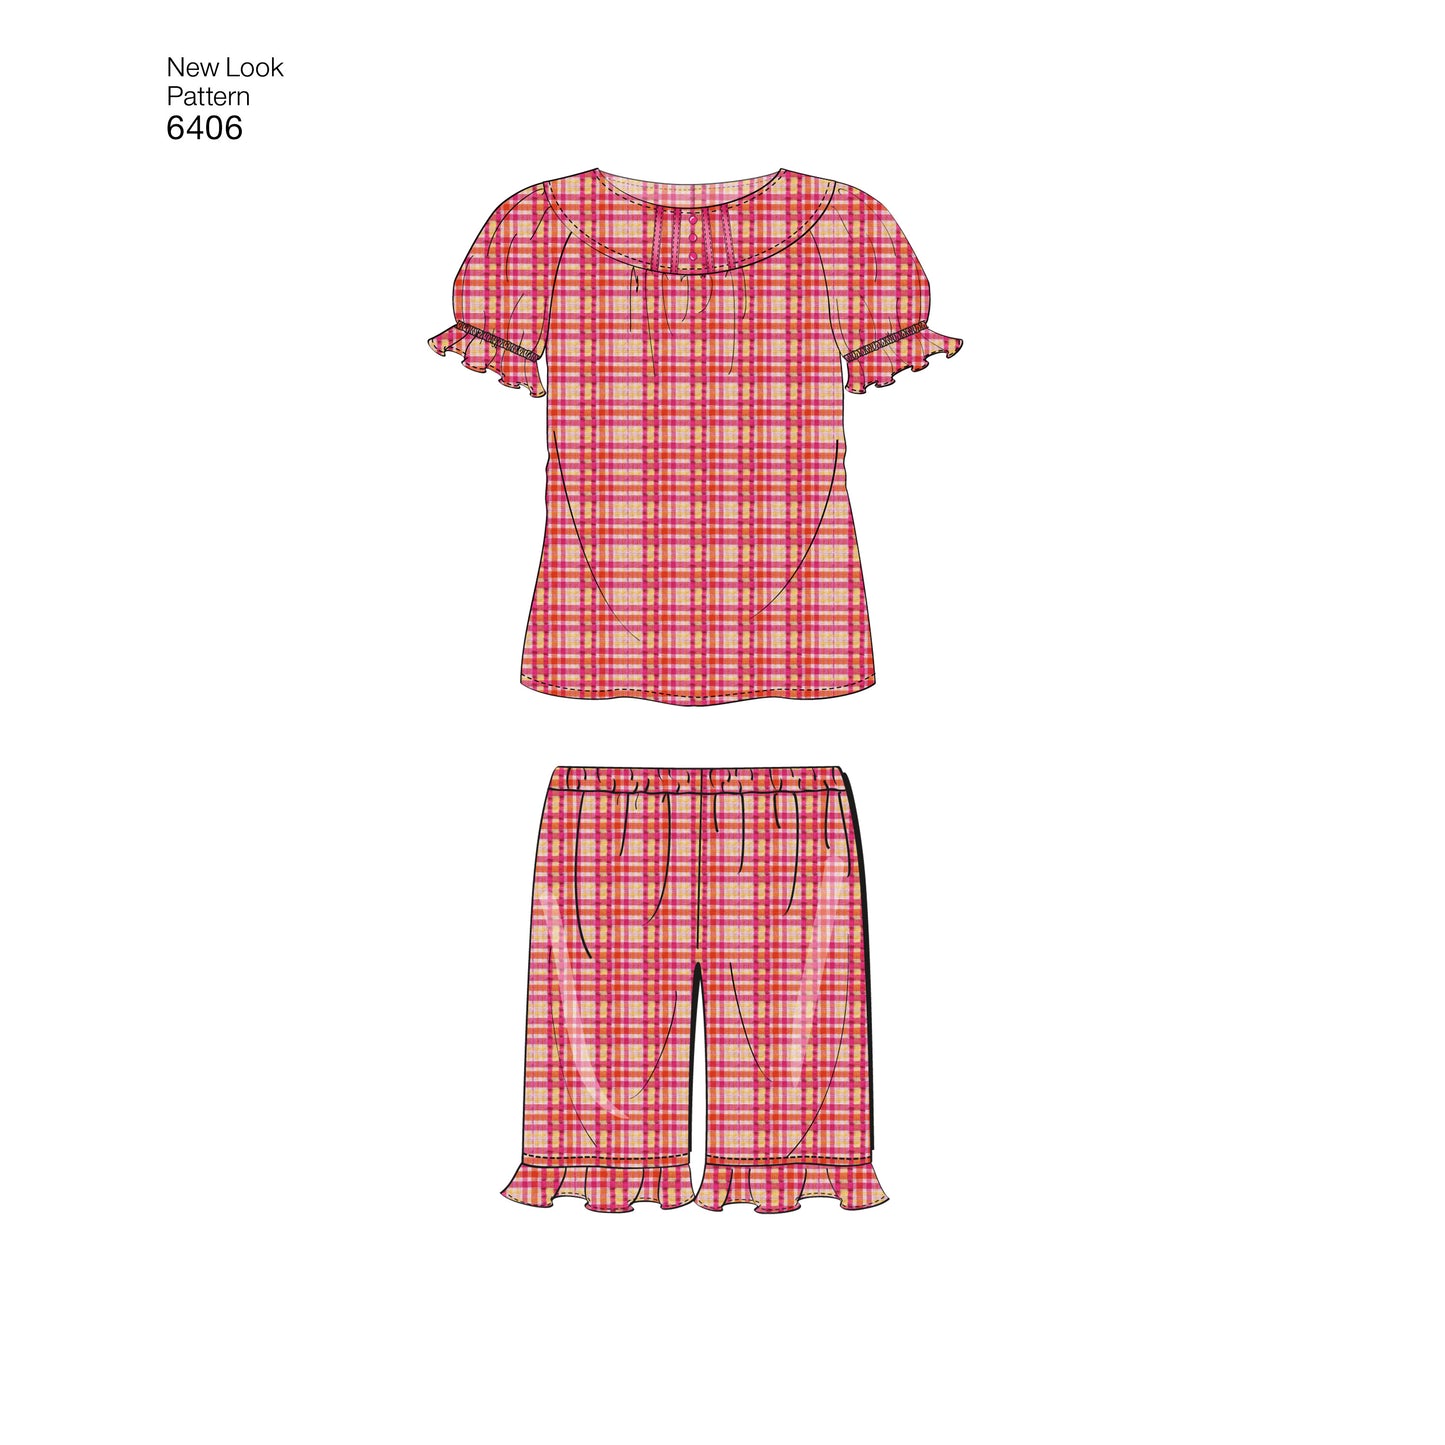 Symönster New Look 6406 - Top Byxa Shorts Pyjamas - Flicka Pojke | Bild 3